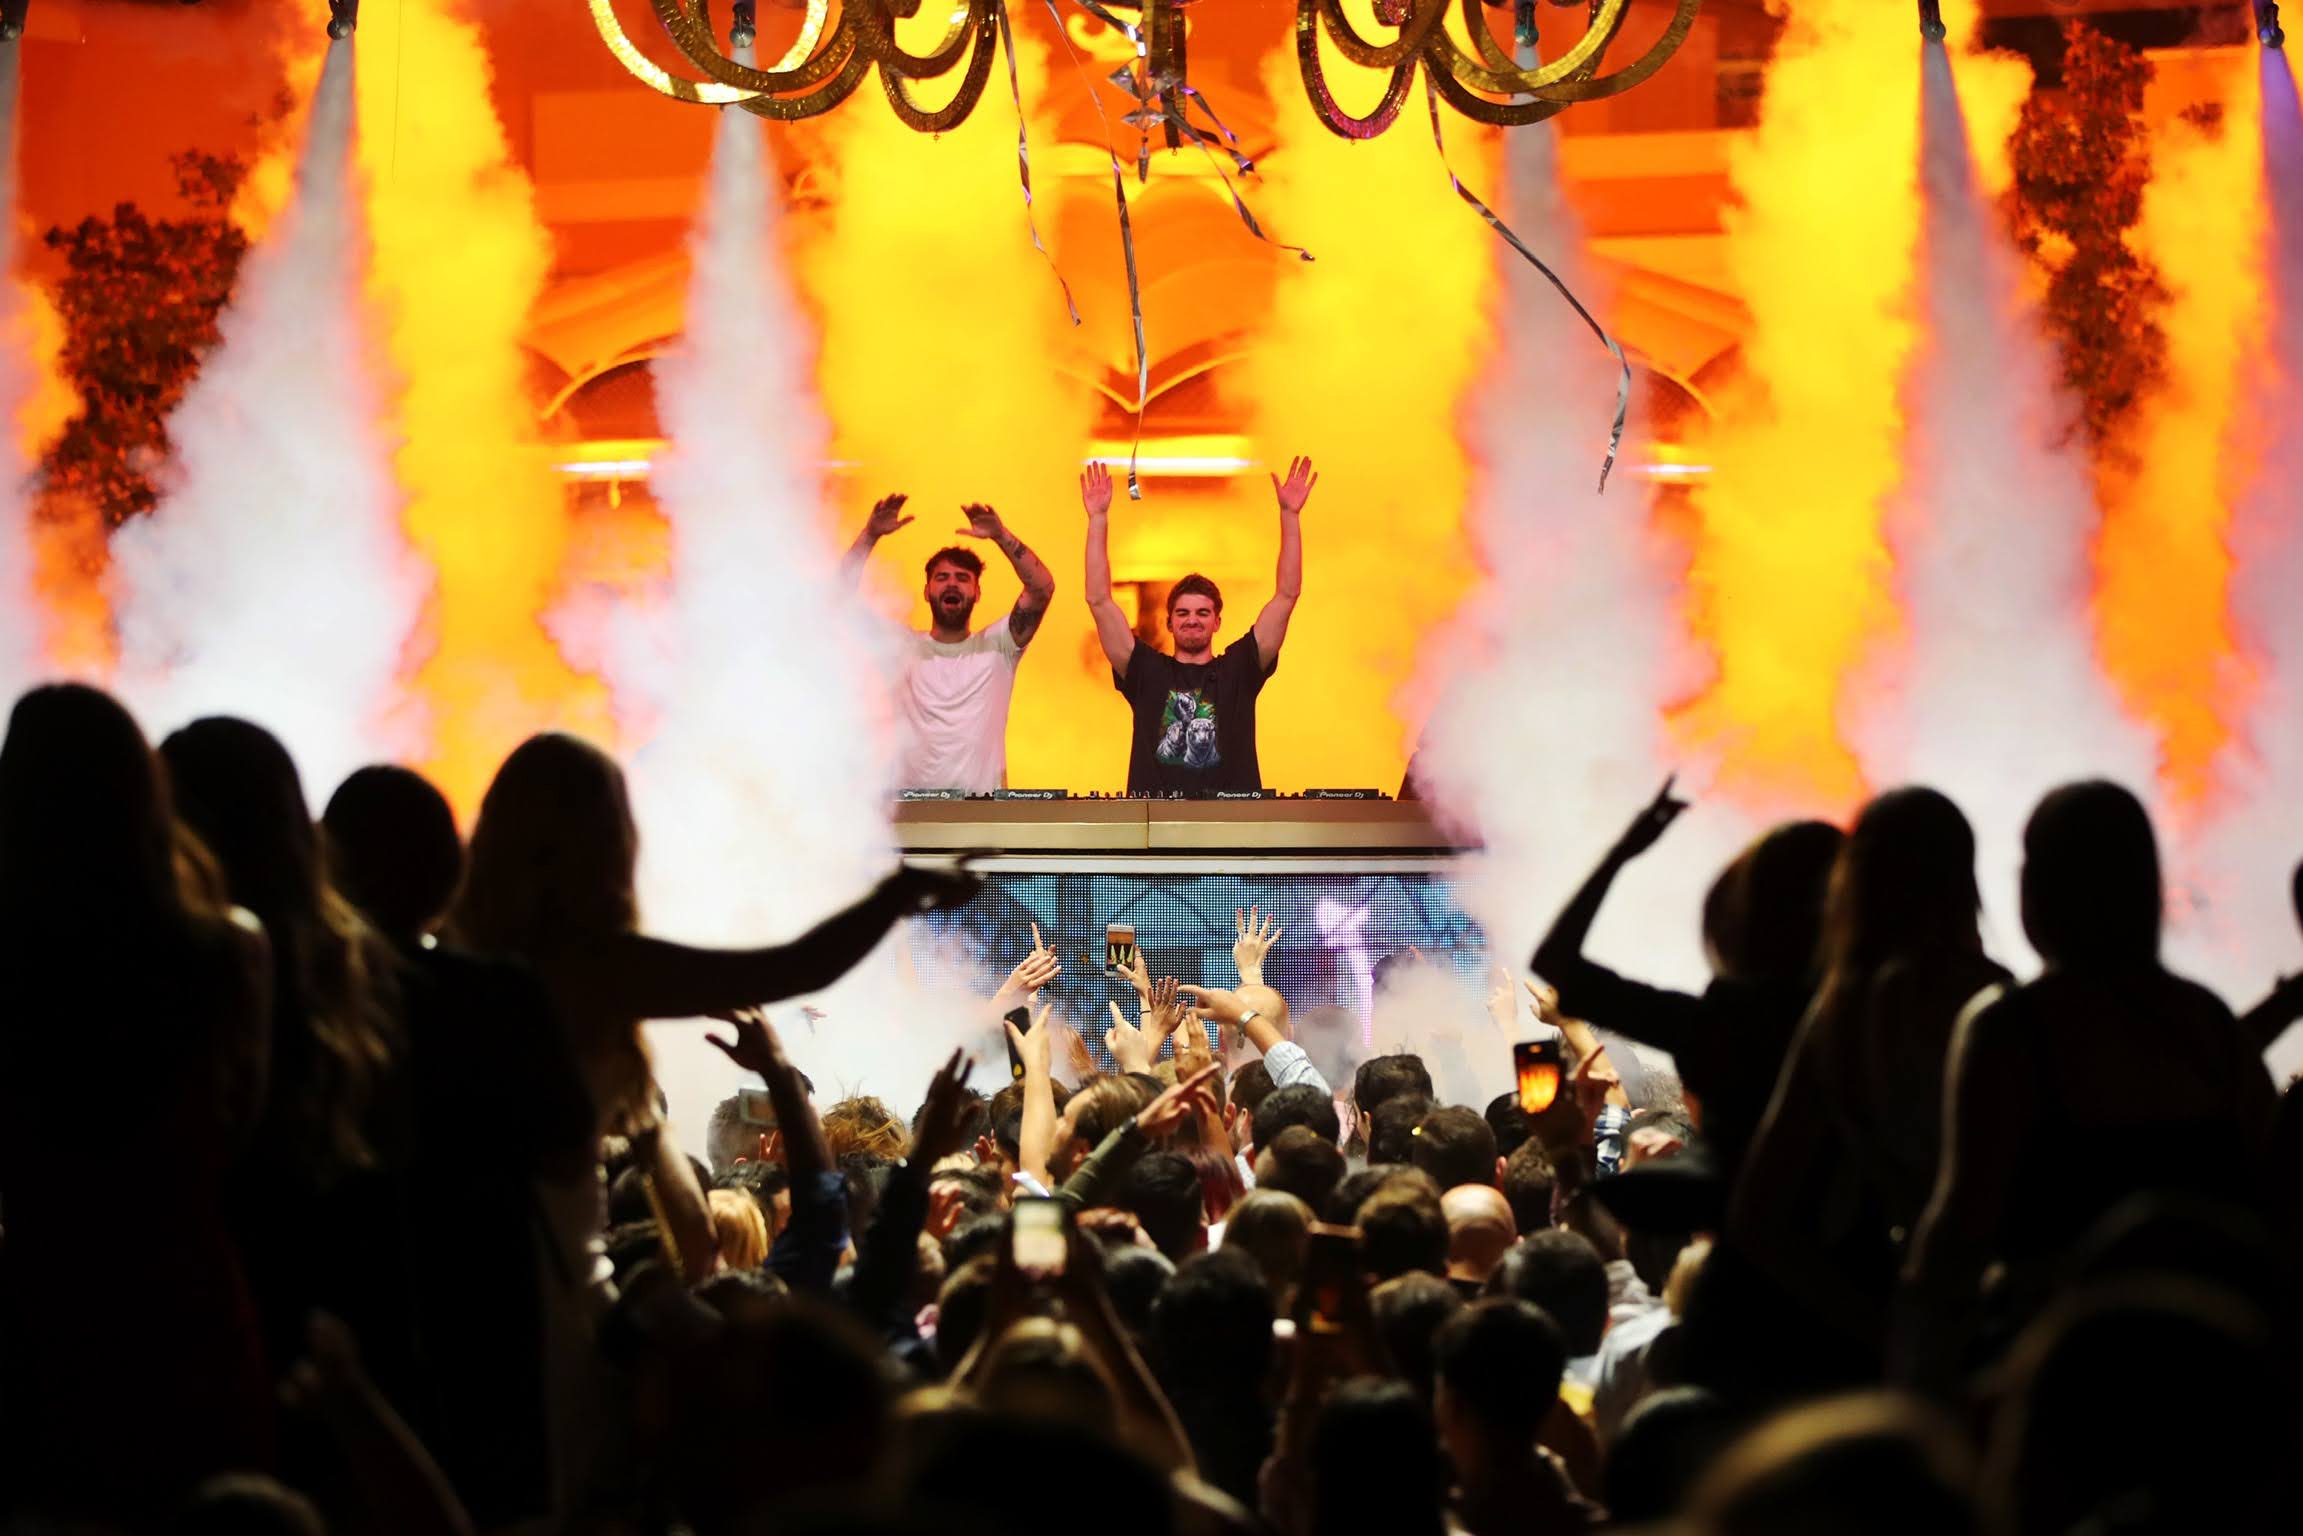 XS Nightclub celebrates 2022's arrival with Marshmello, The Chainsmokers,  Diplo – Electronic Vegas